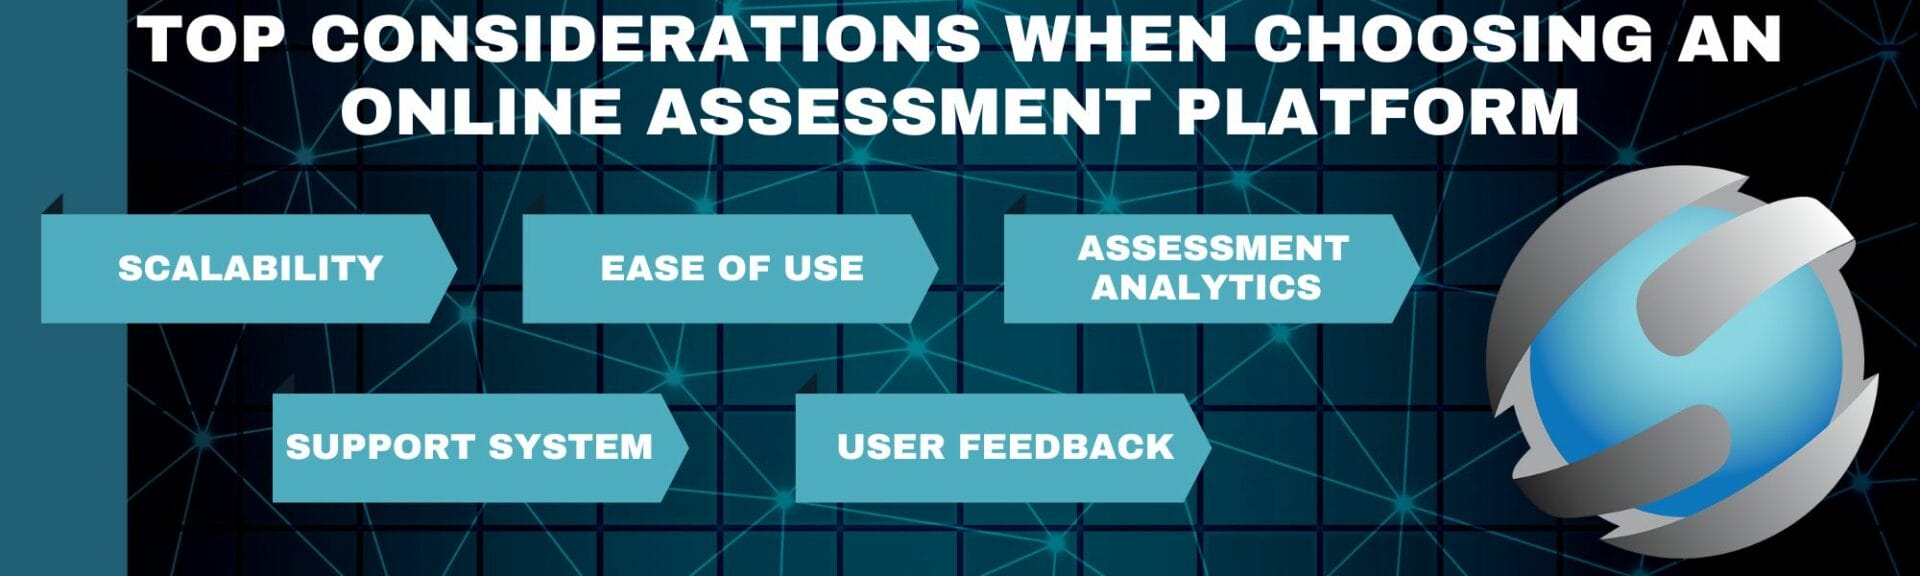 Top Considerations when Choosing an Online Assessment Platform